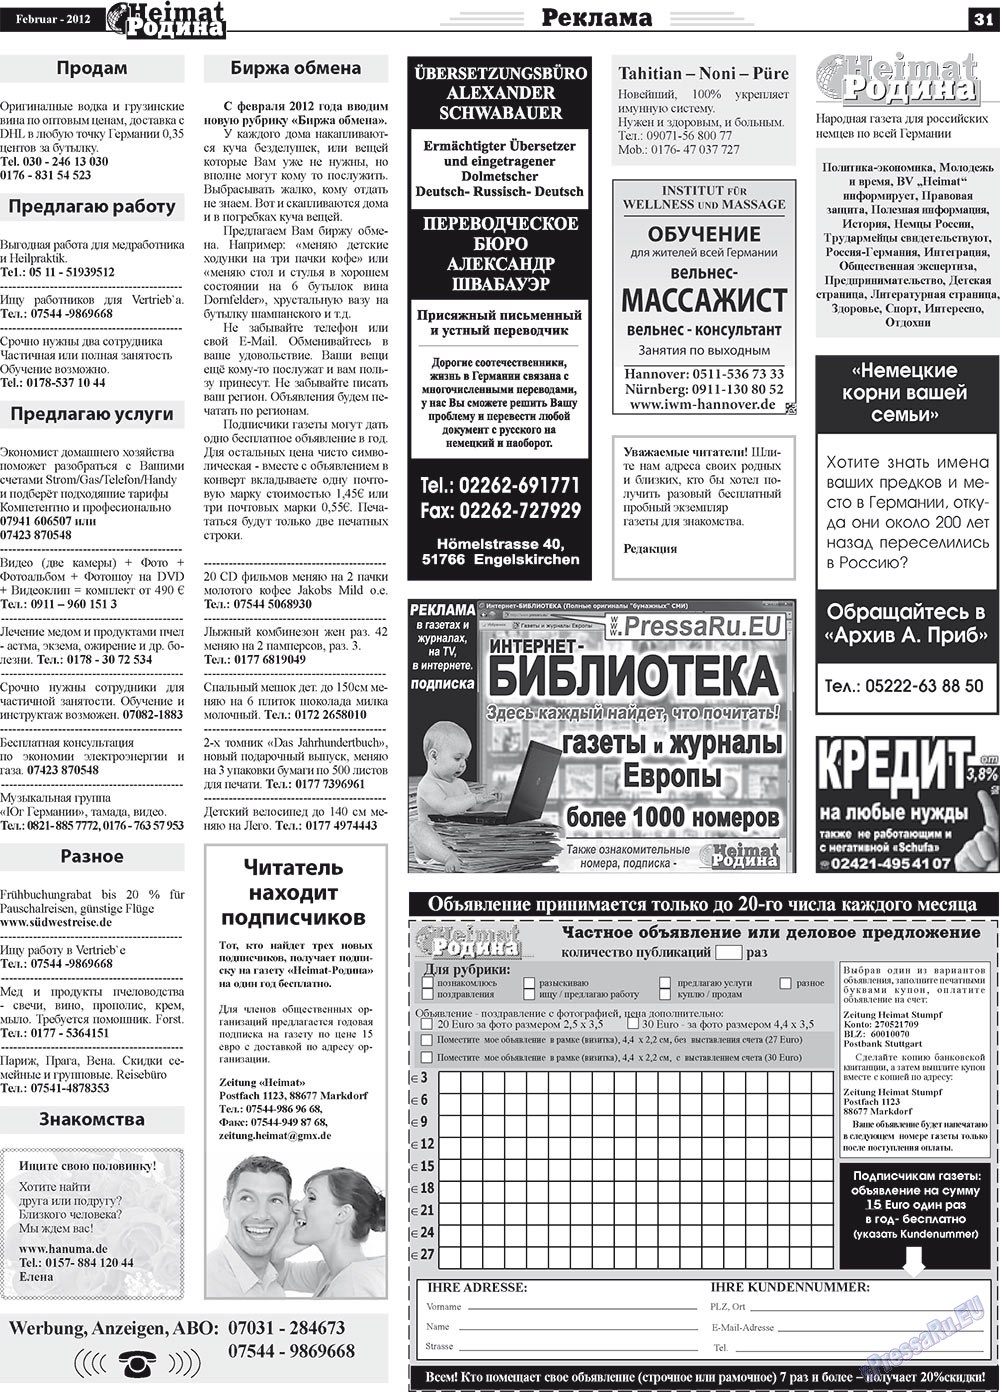 Heimat-Родина (газета). 2012 год, номер 2, стр. 31